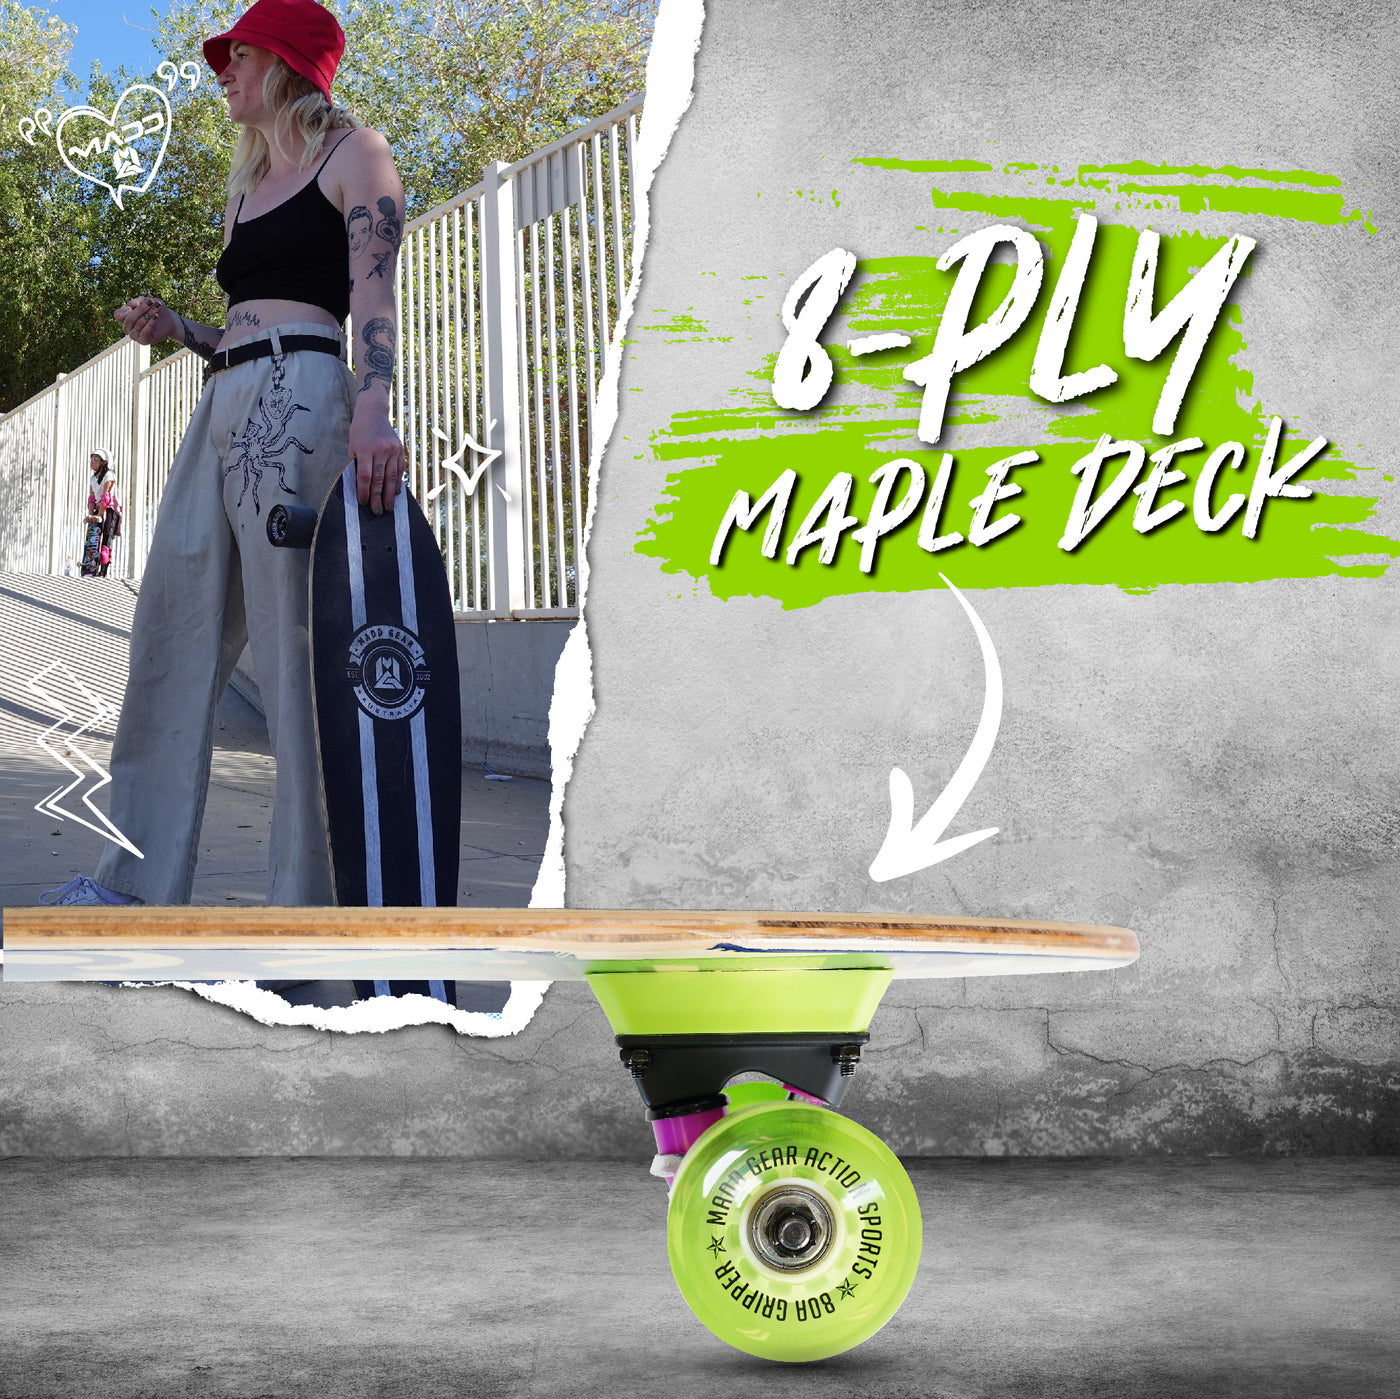 Madd Gear 36" Longboard Complete Skateboard Maple Deck Blue MGP